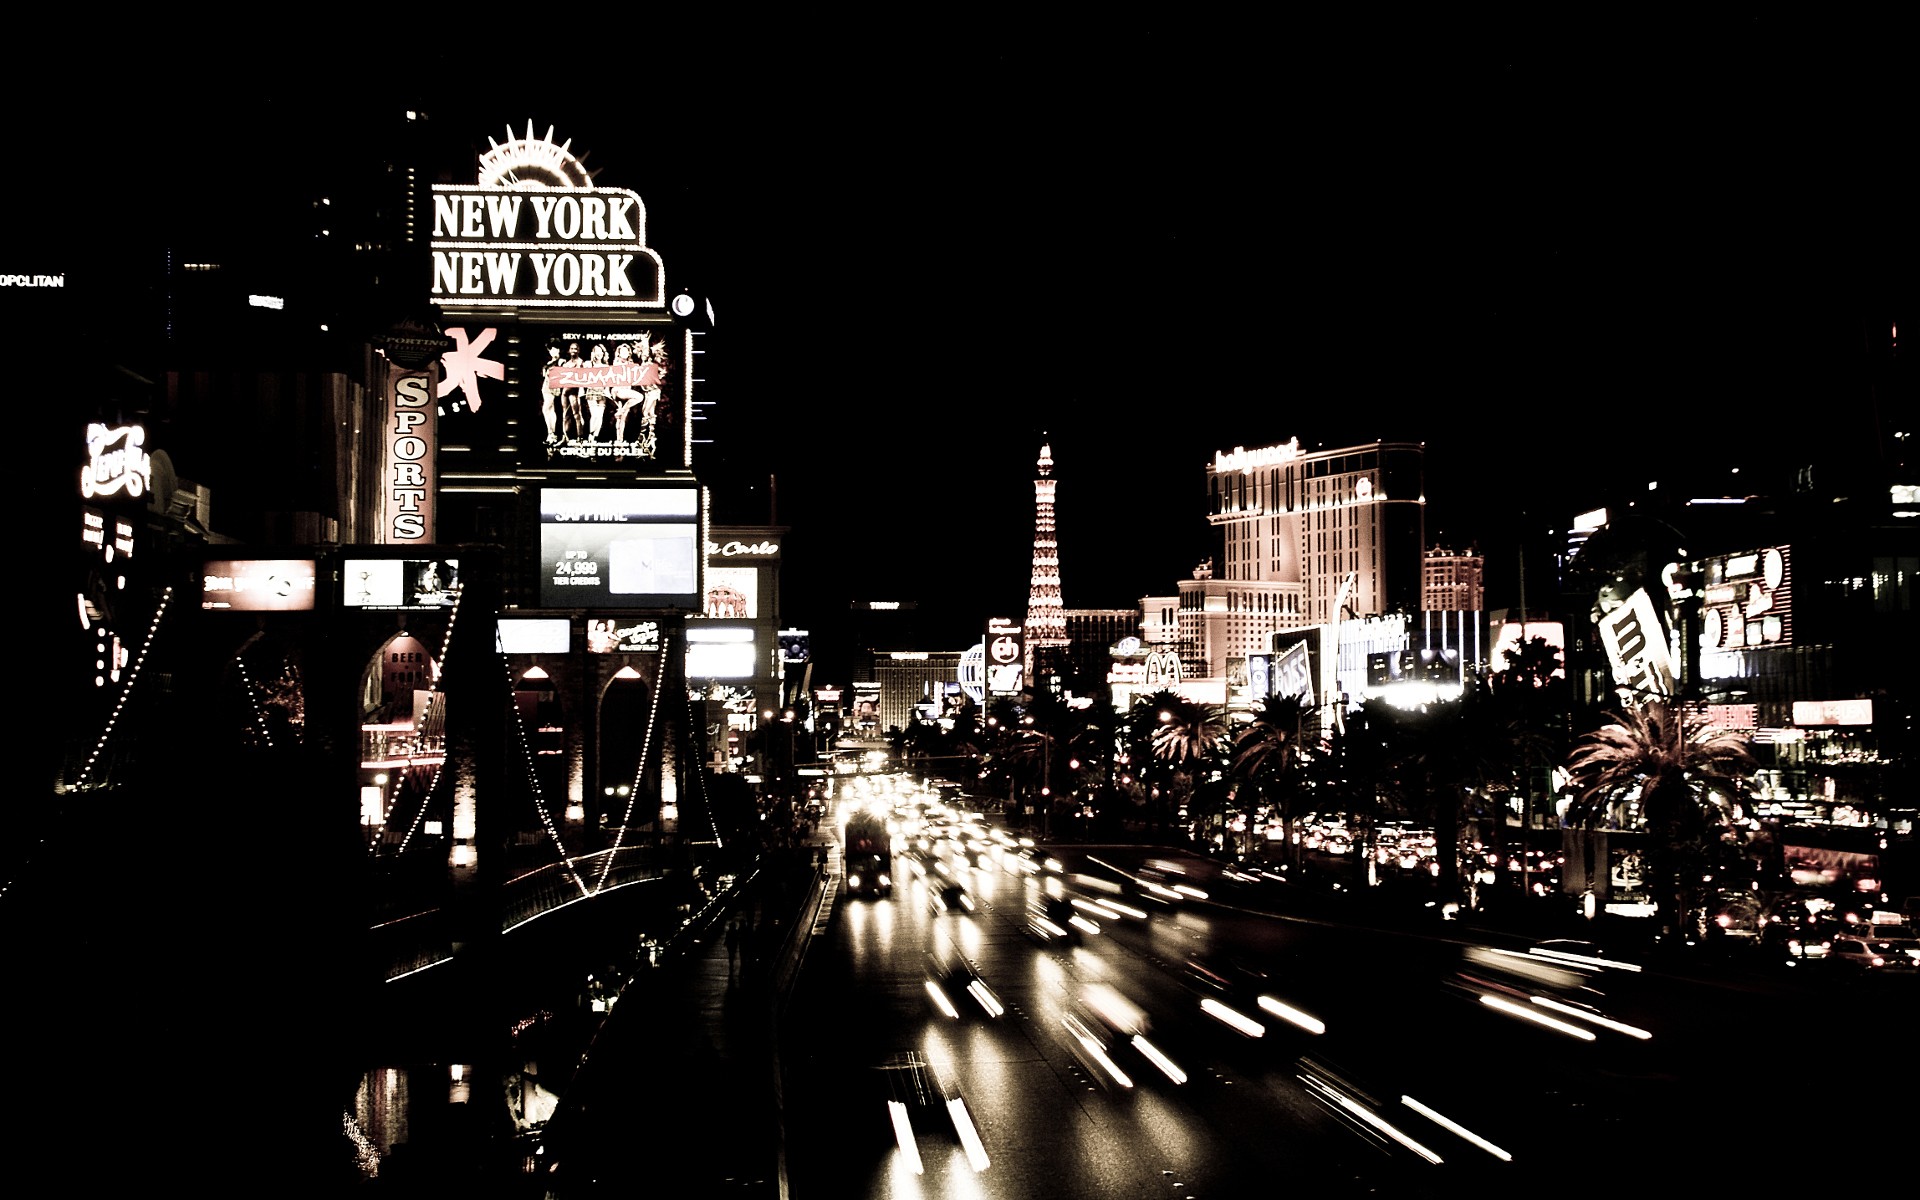 черно-белое изображение, черный цвет, города, улицы, белый, автомобили, Лас-Вегас, городской, здания - обои на рабочий стол